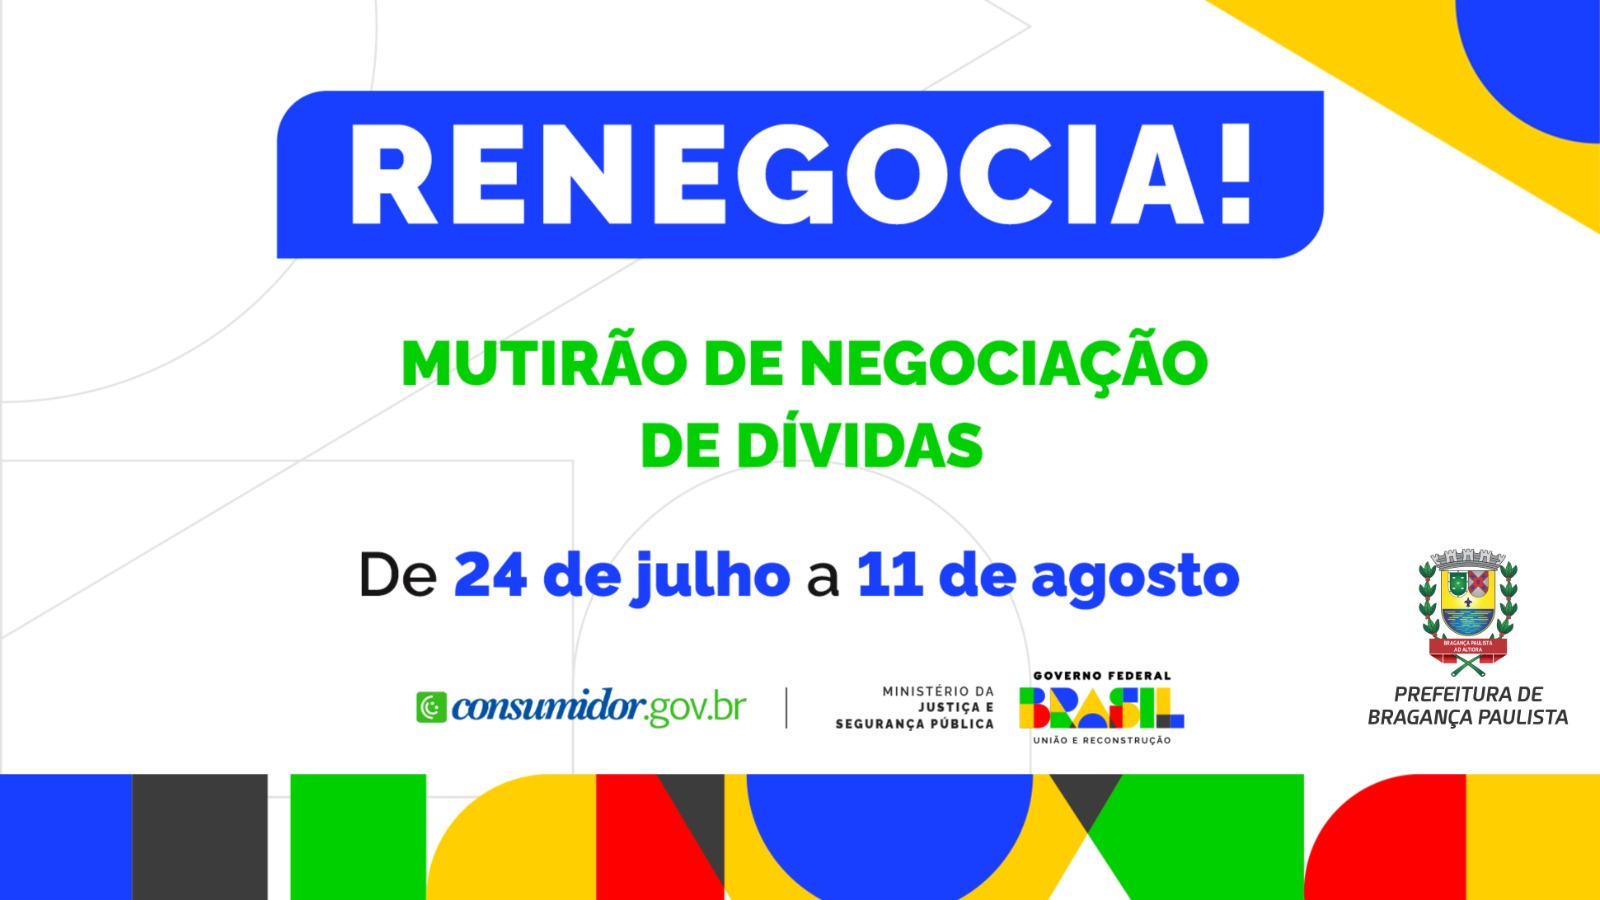 Procon de Bragança Paulista promove mutirão de renegociação de dívidas “Renegocia”   